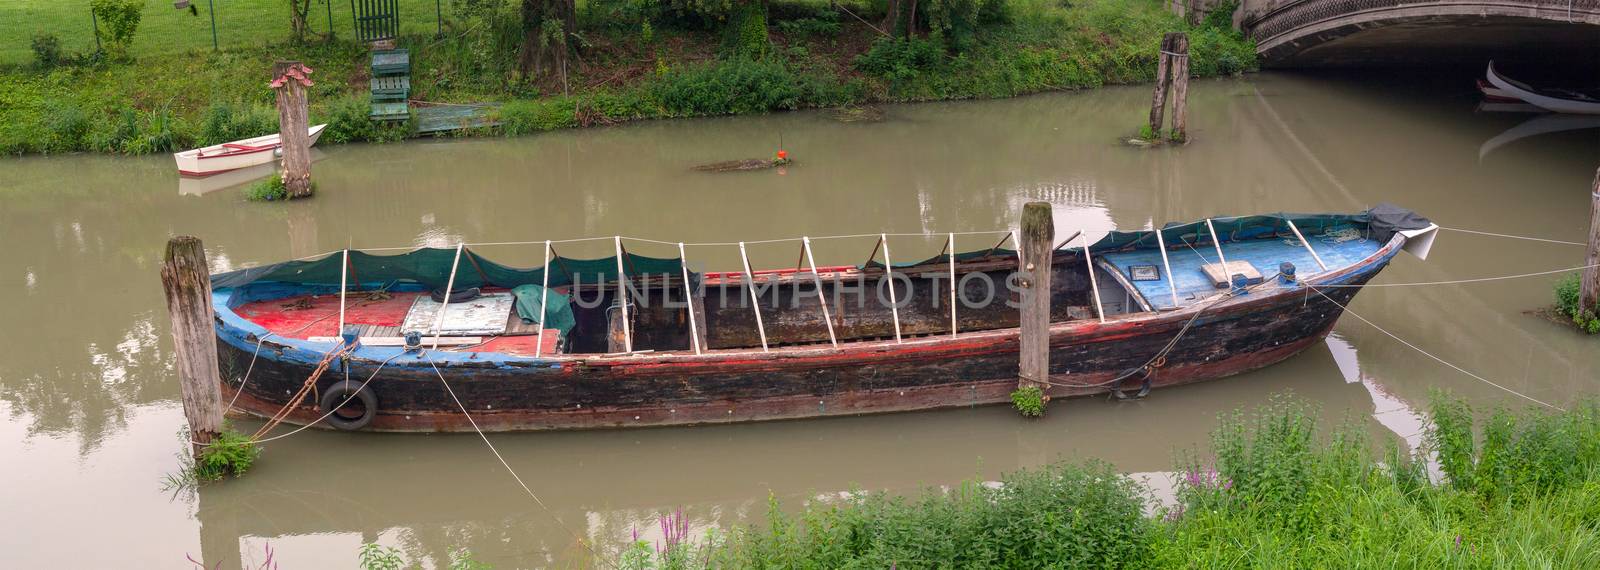 View of the boat in the Bacchiglione river, Padova